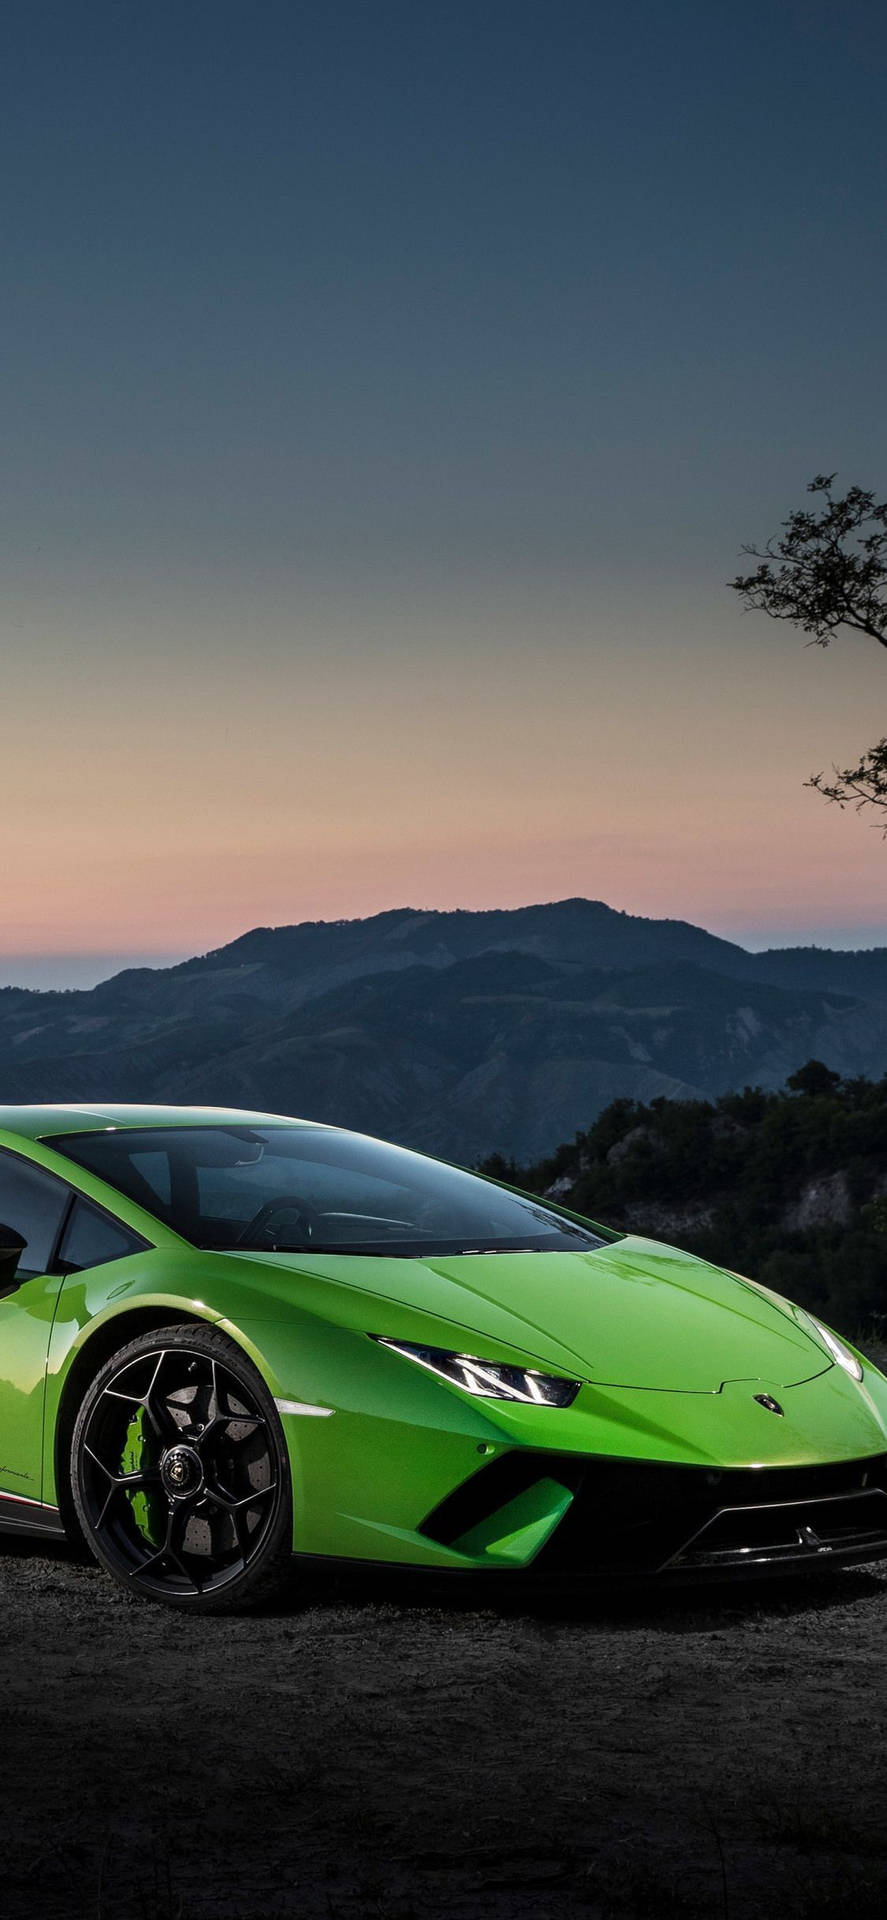 Iphone X Car Green Lamborghini Huracan